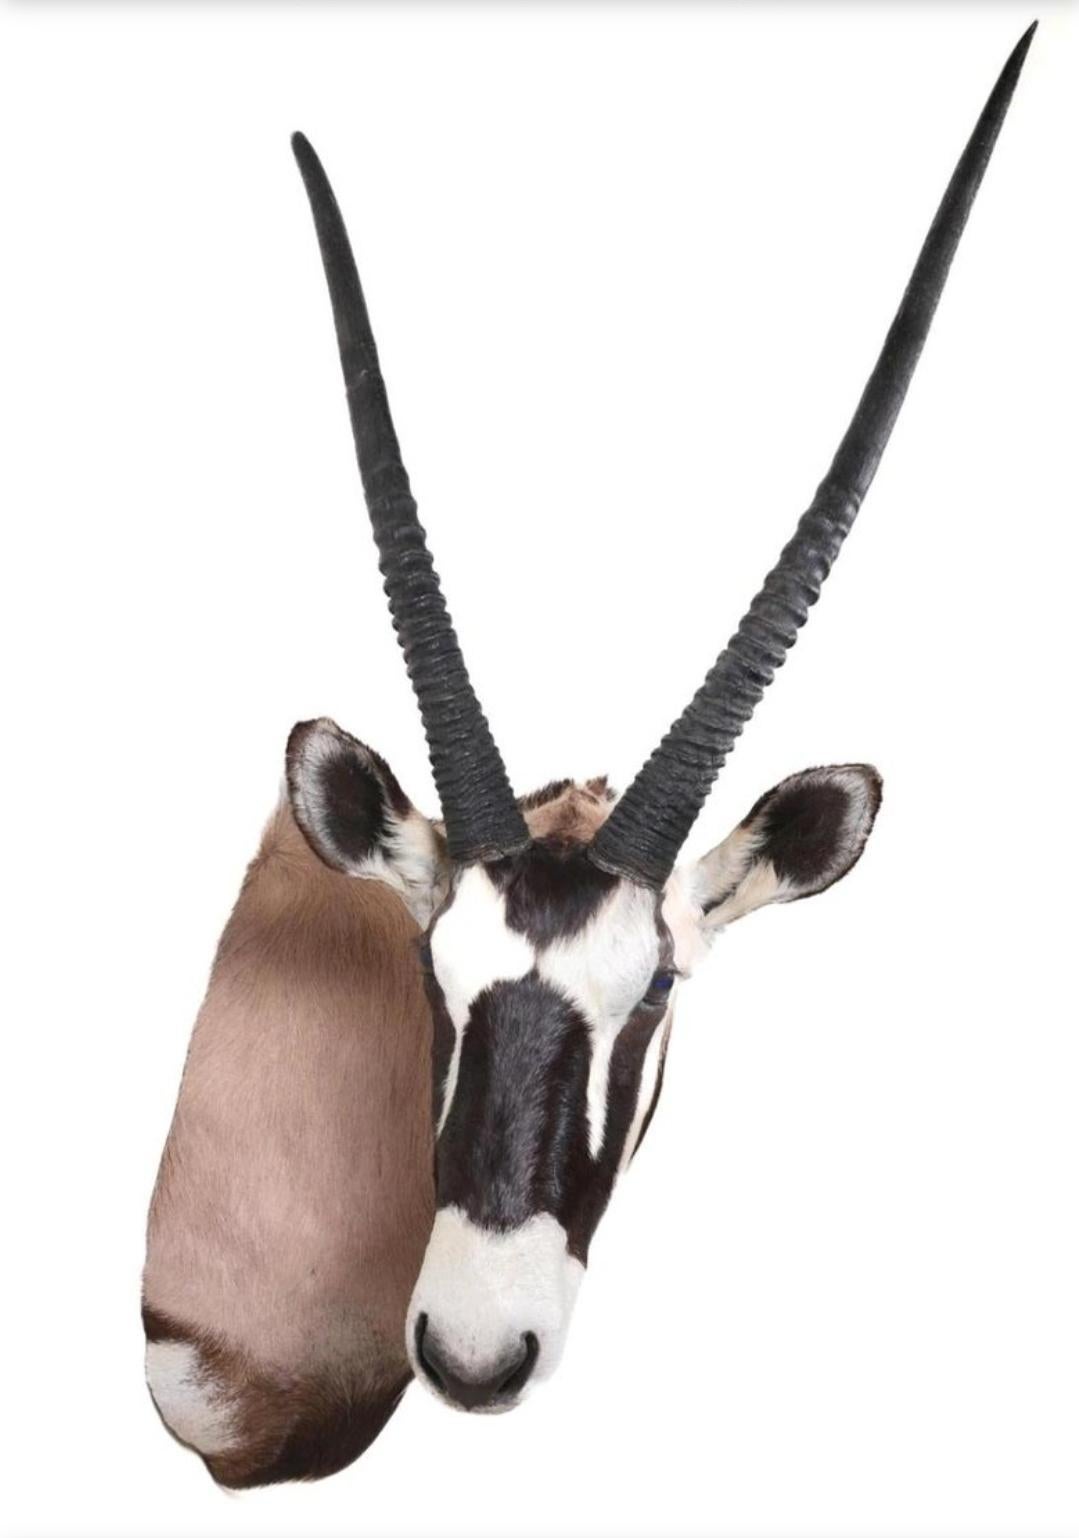 Dies ist ein großartiges afrikanisches Gemsbock-Taxidermie-Schulterstück. Der Kopf befindet sich in halb aufrechter Position und blickt zur rechten Seite des Tieres. Dies ist ein elegantes Beispiel für ein Reittier dieser Kreatur.
Der Gemsbock ist